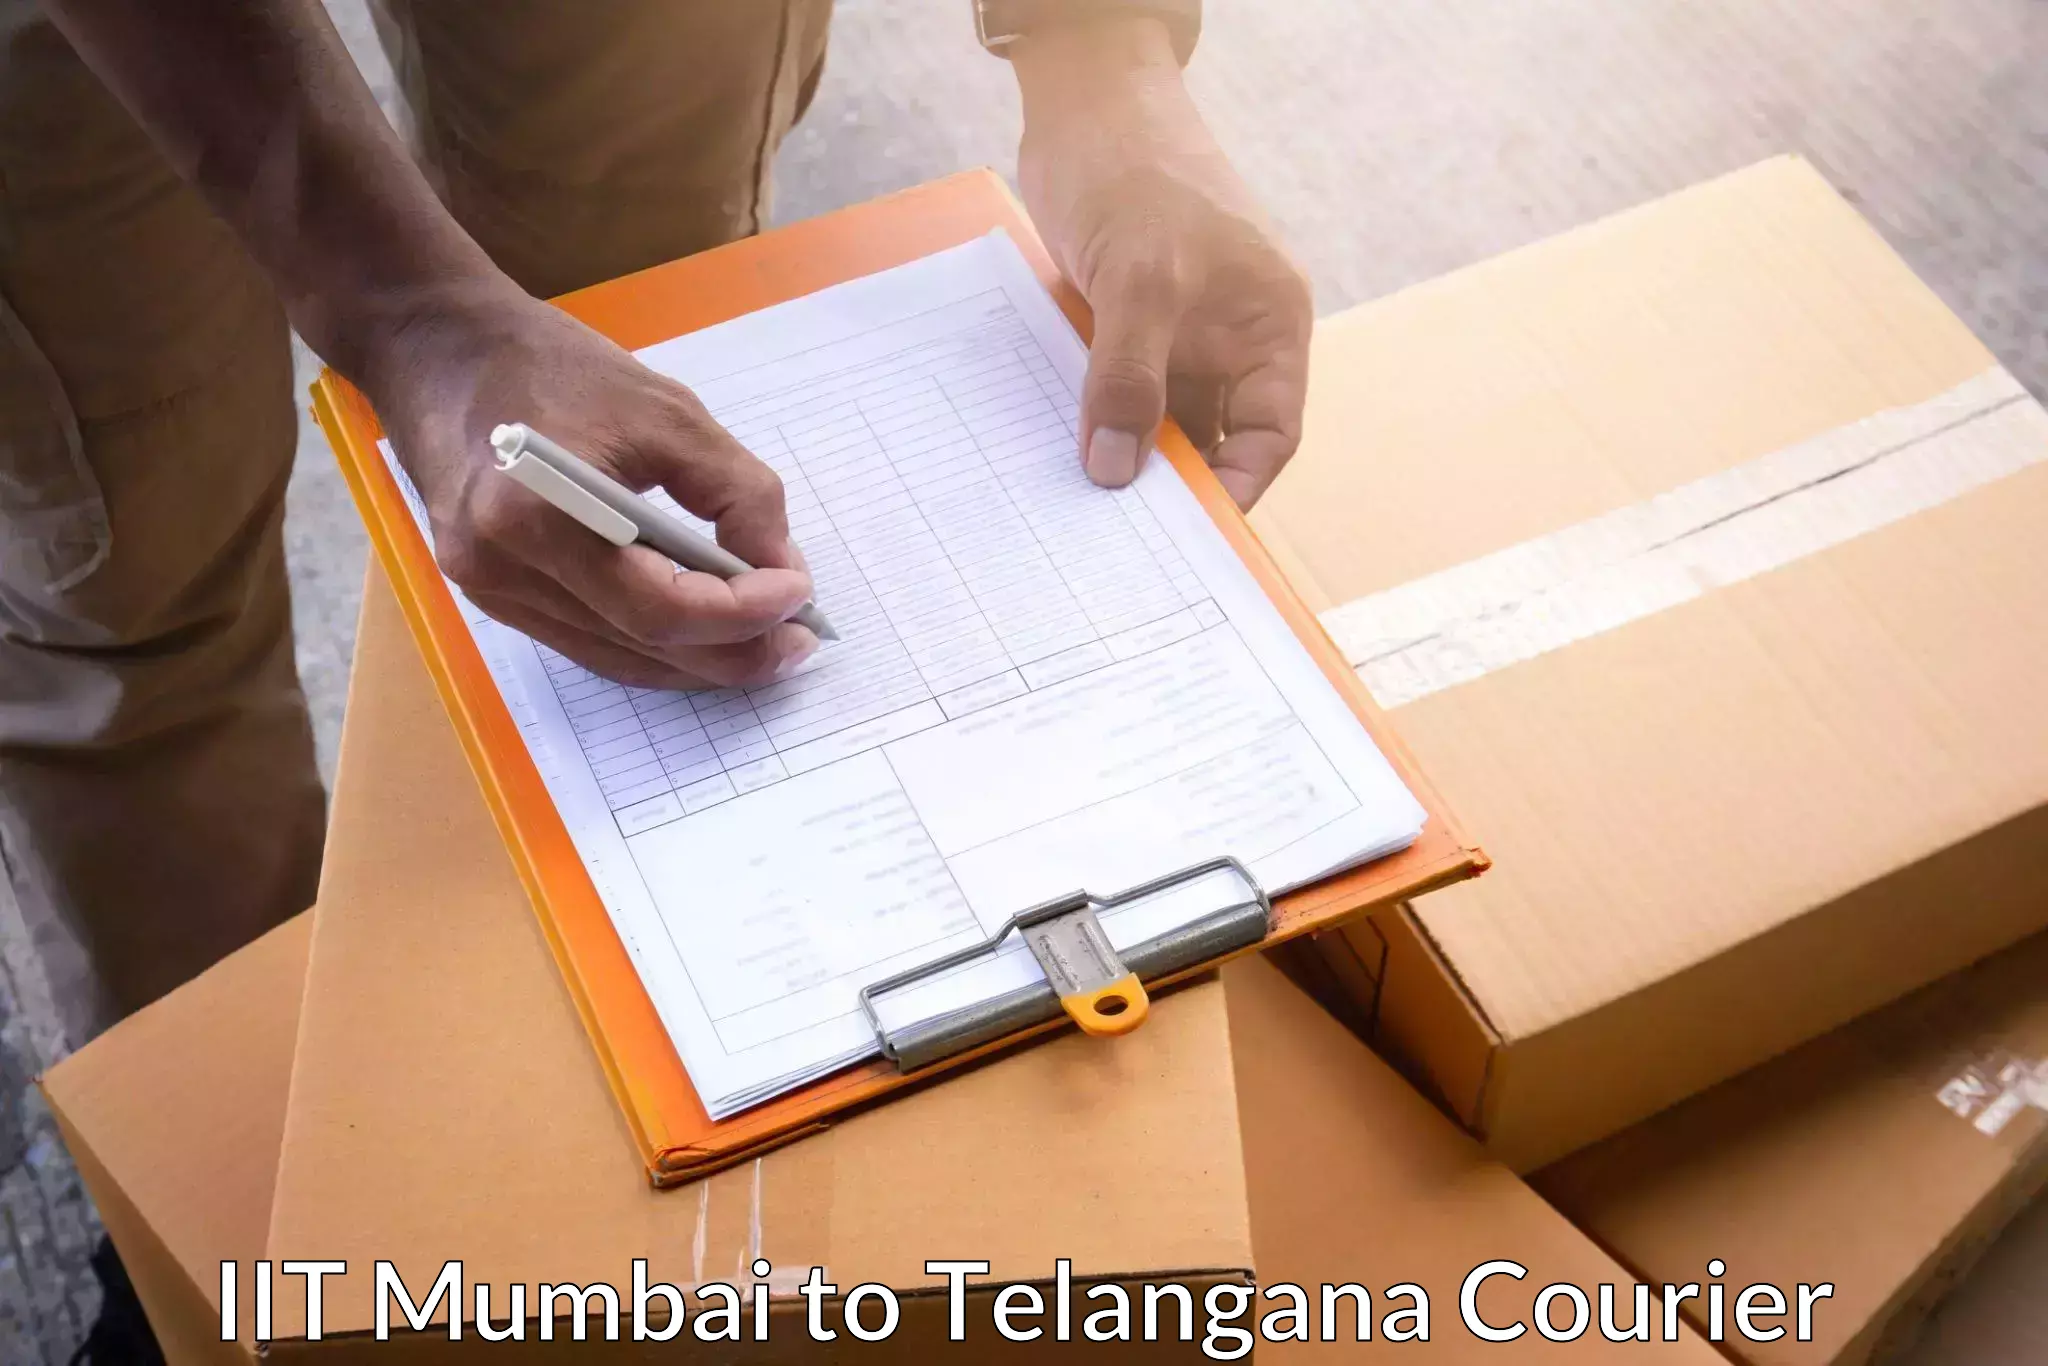 Expedited shipping methods IIT Mumbai to Khairatabad